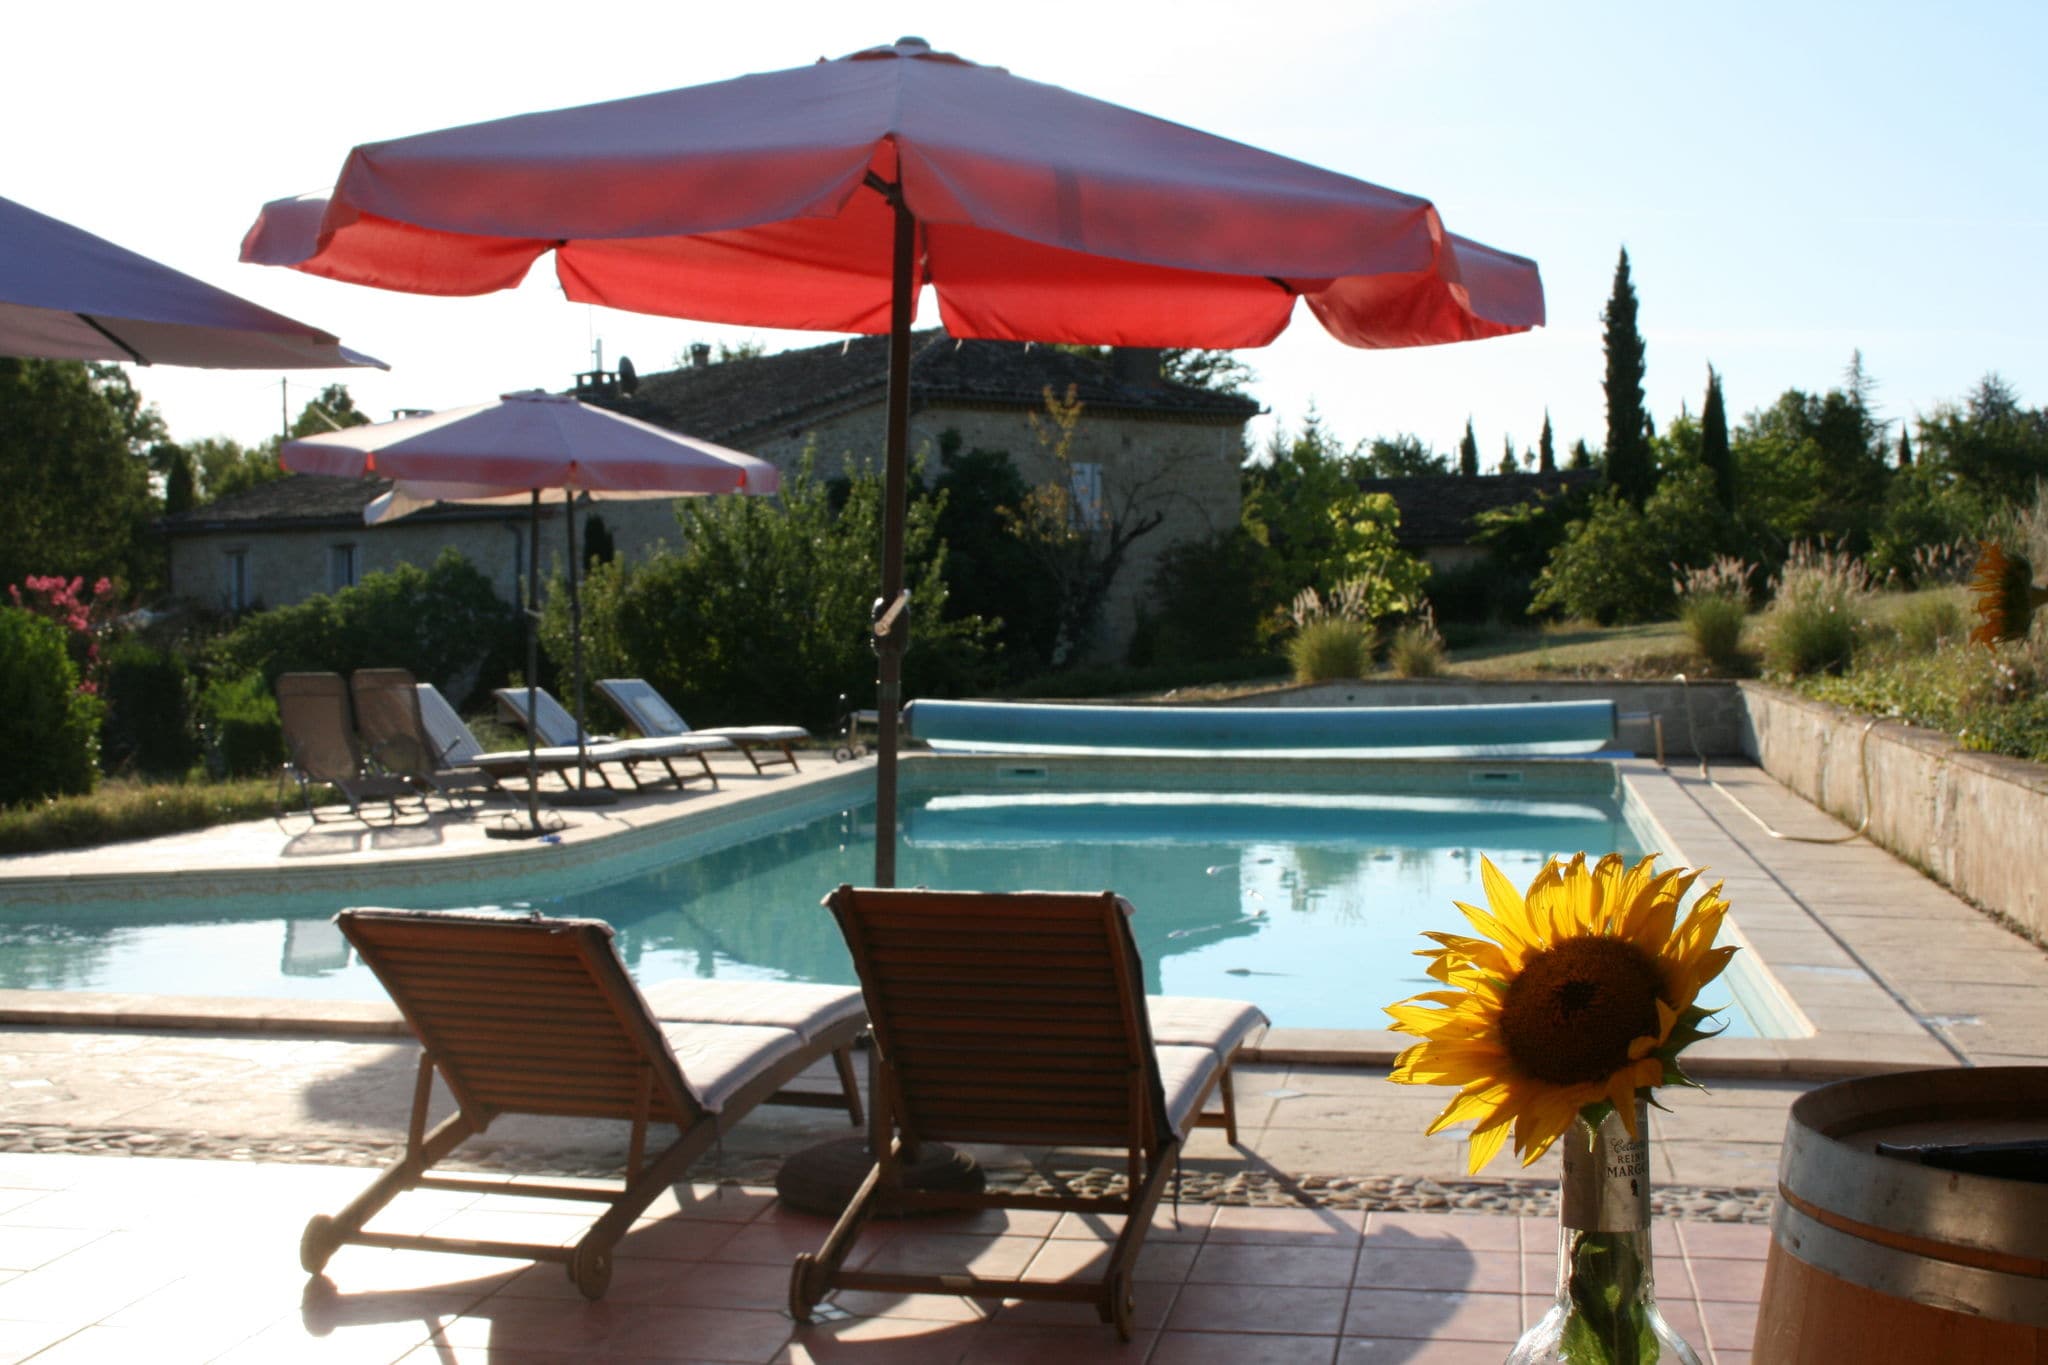 Mooie gite met zwembad in 250 jaar oude wijnboerderij, ideaal voor koppels!